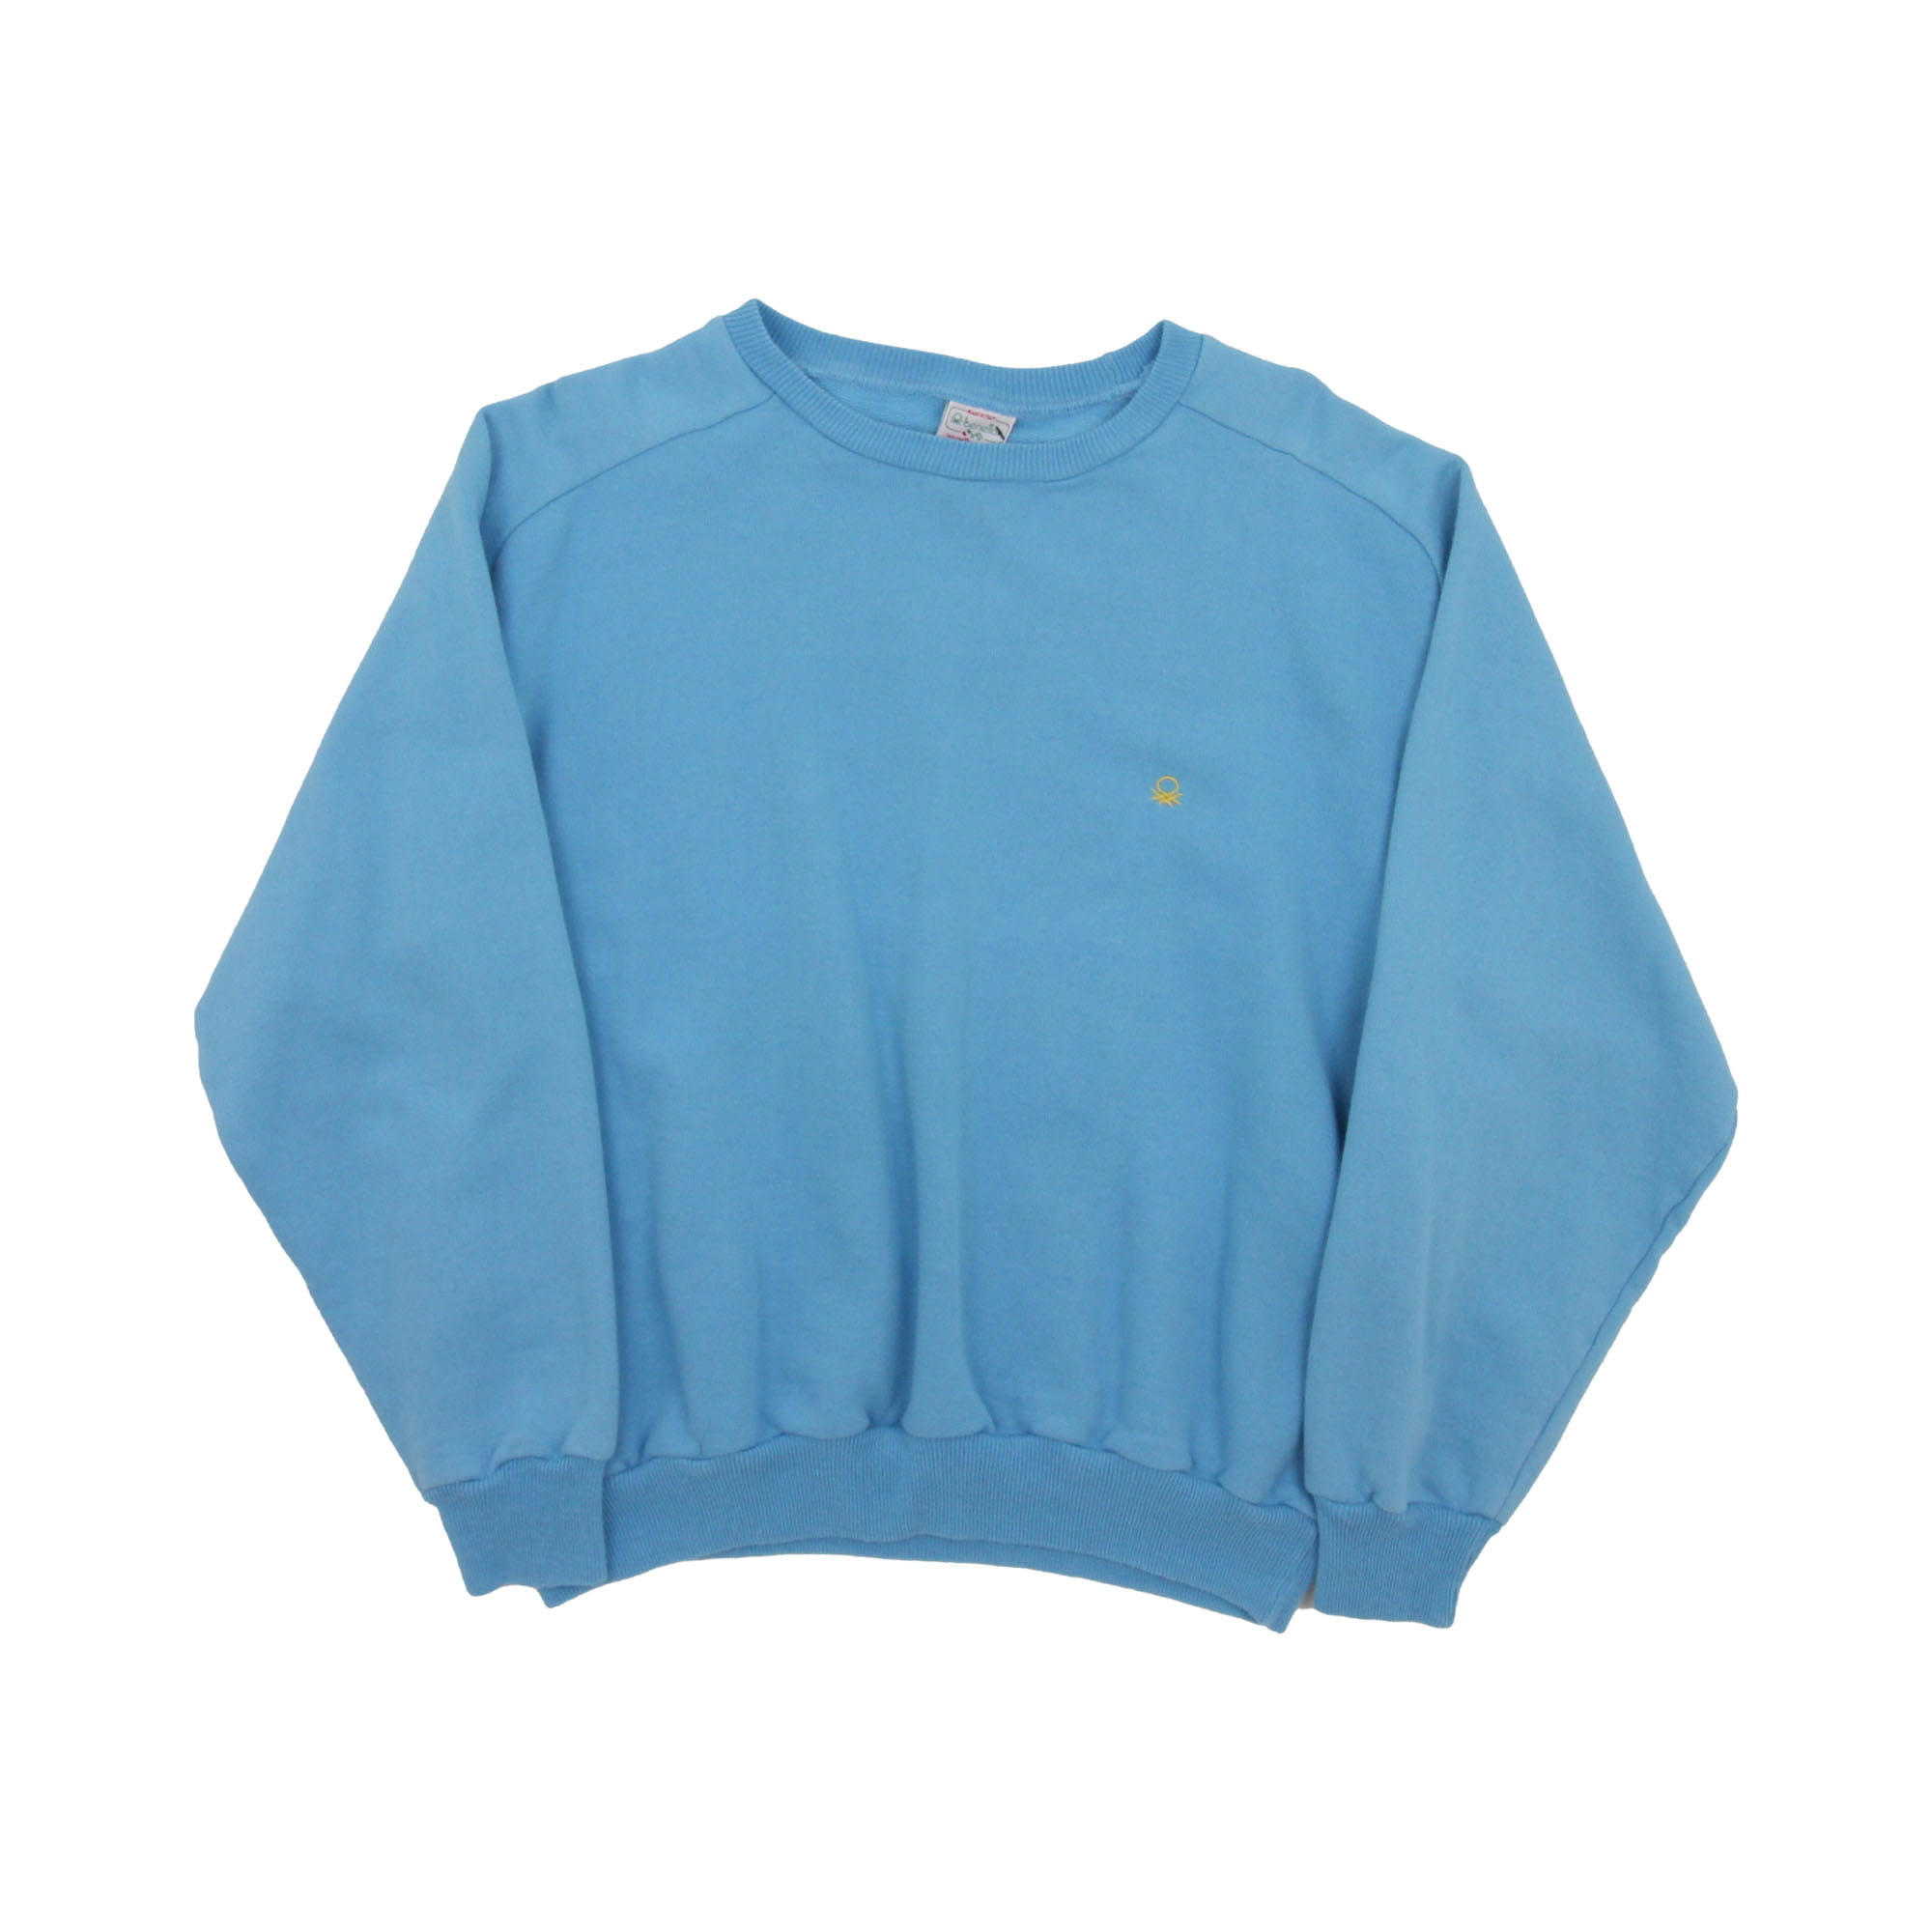 Sweatshirt Blue - Women's S